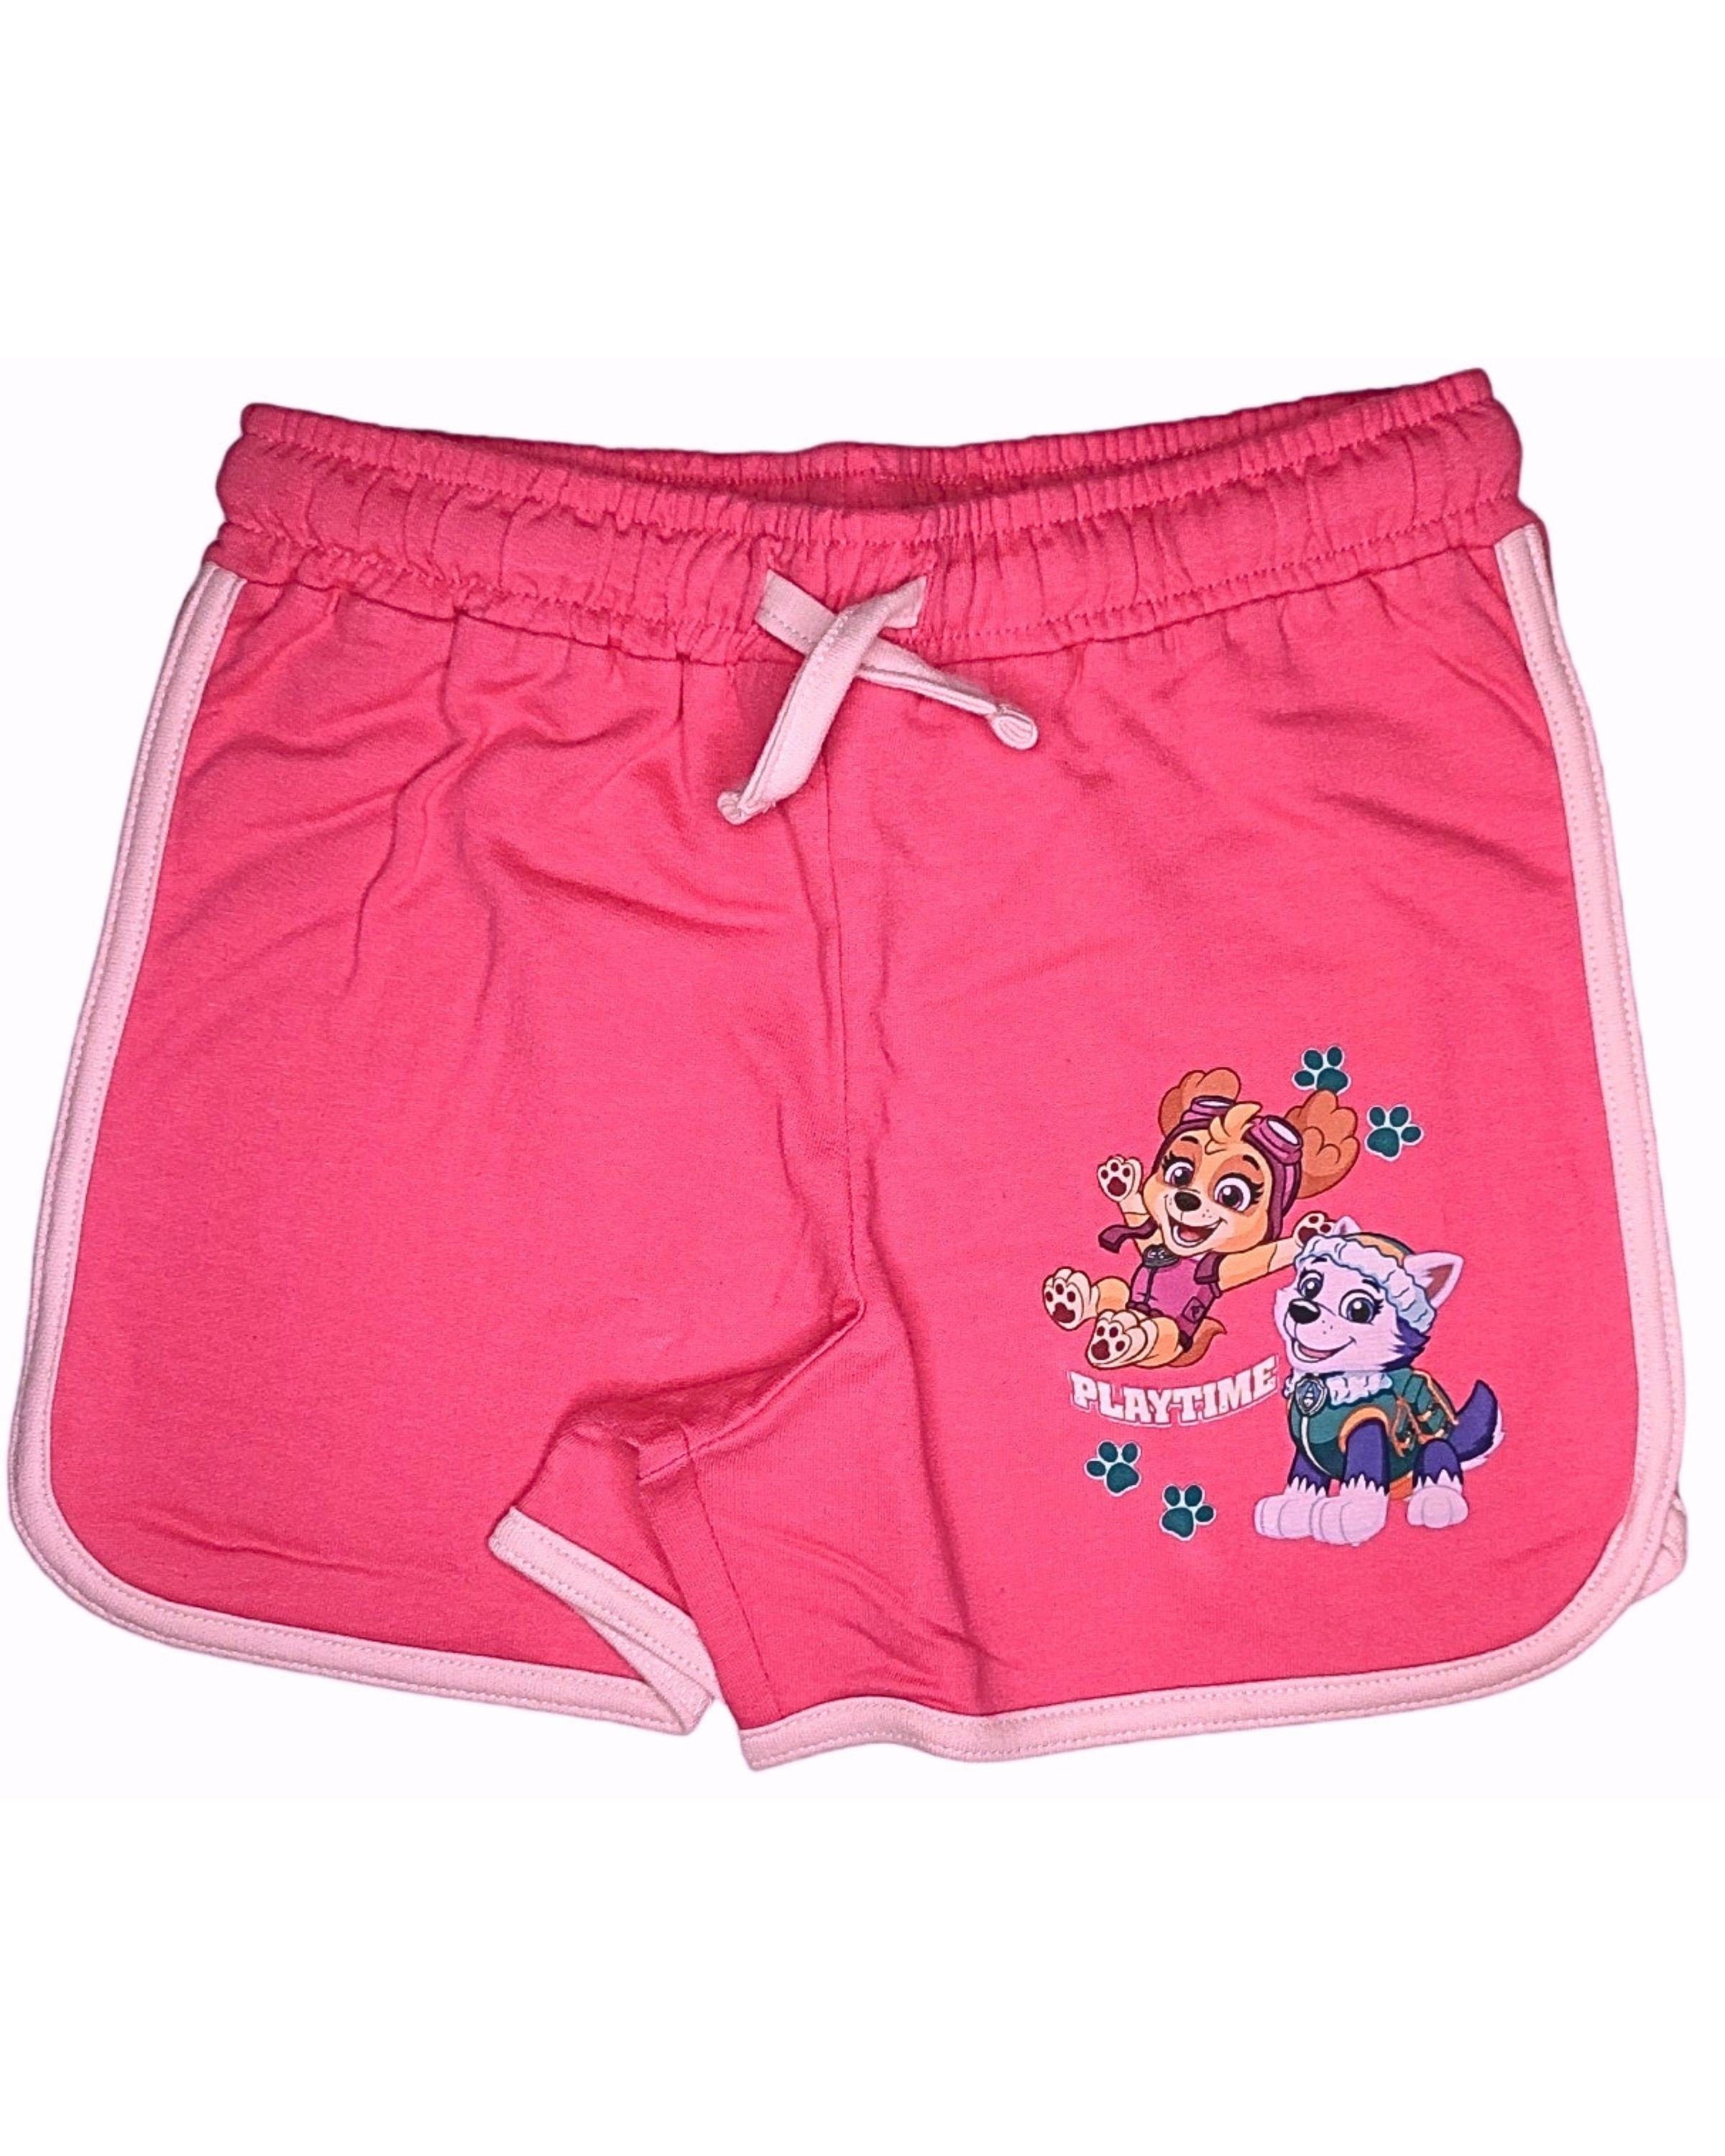 PAW PATROL Shorts Skye & Everest - Playtime Mädchen kurze Hose aus Baumwolle Gr. 98 - 128 cm Pink